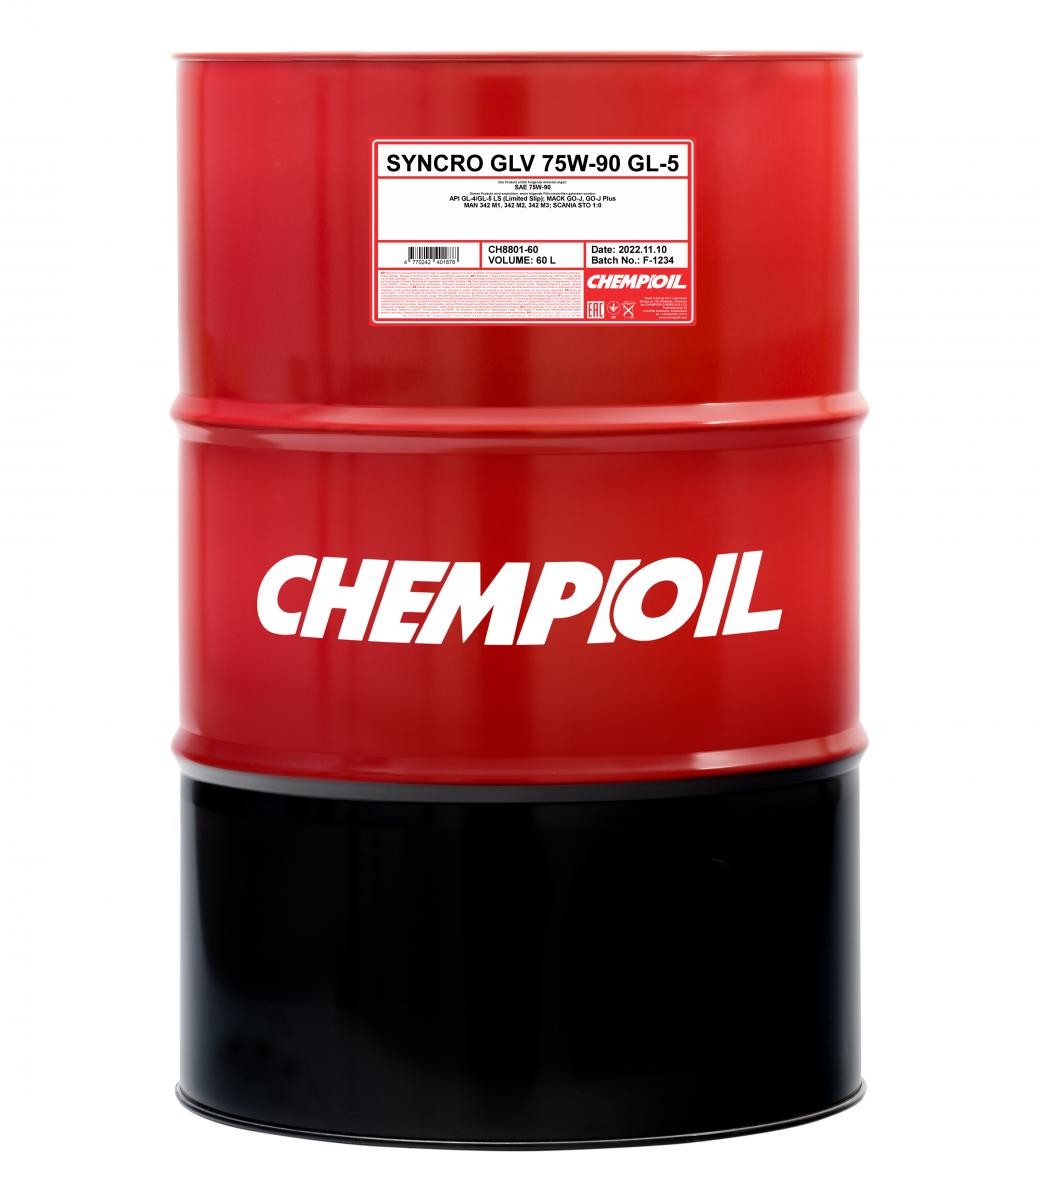 CHEMPIOIL Syncro, GLV GL-5 CH8801-60 Transmission fluid 75W-90, Capacity: 60l